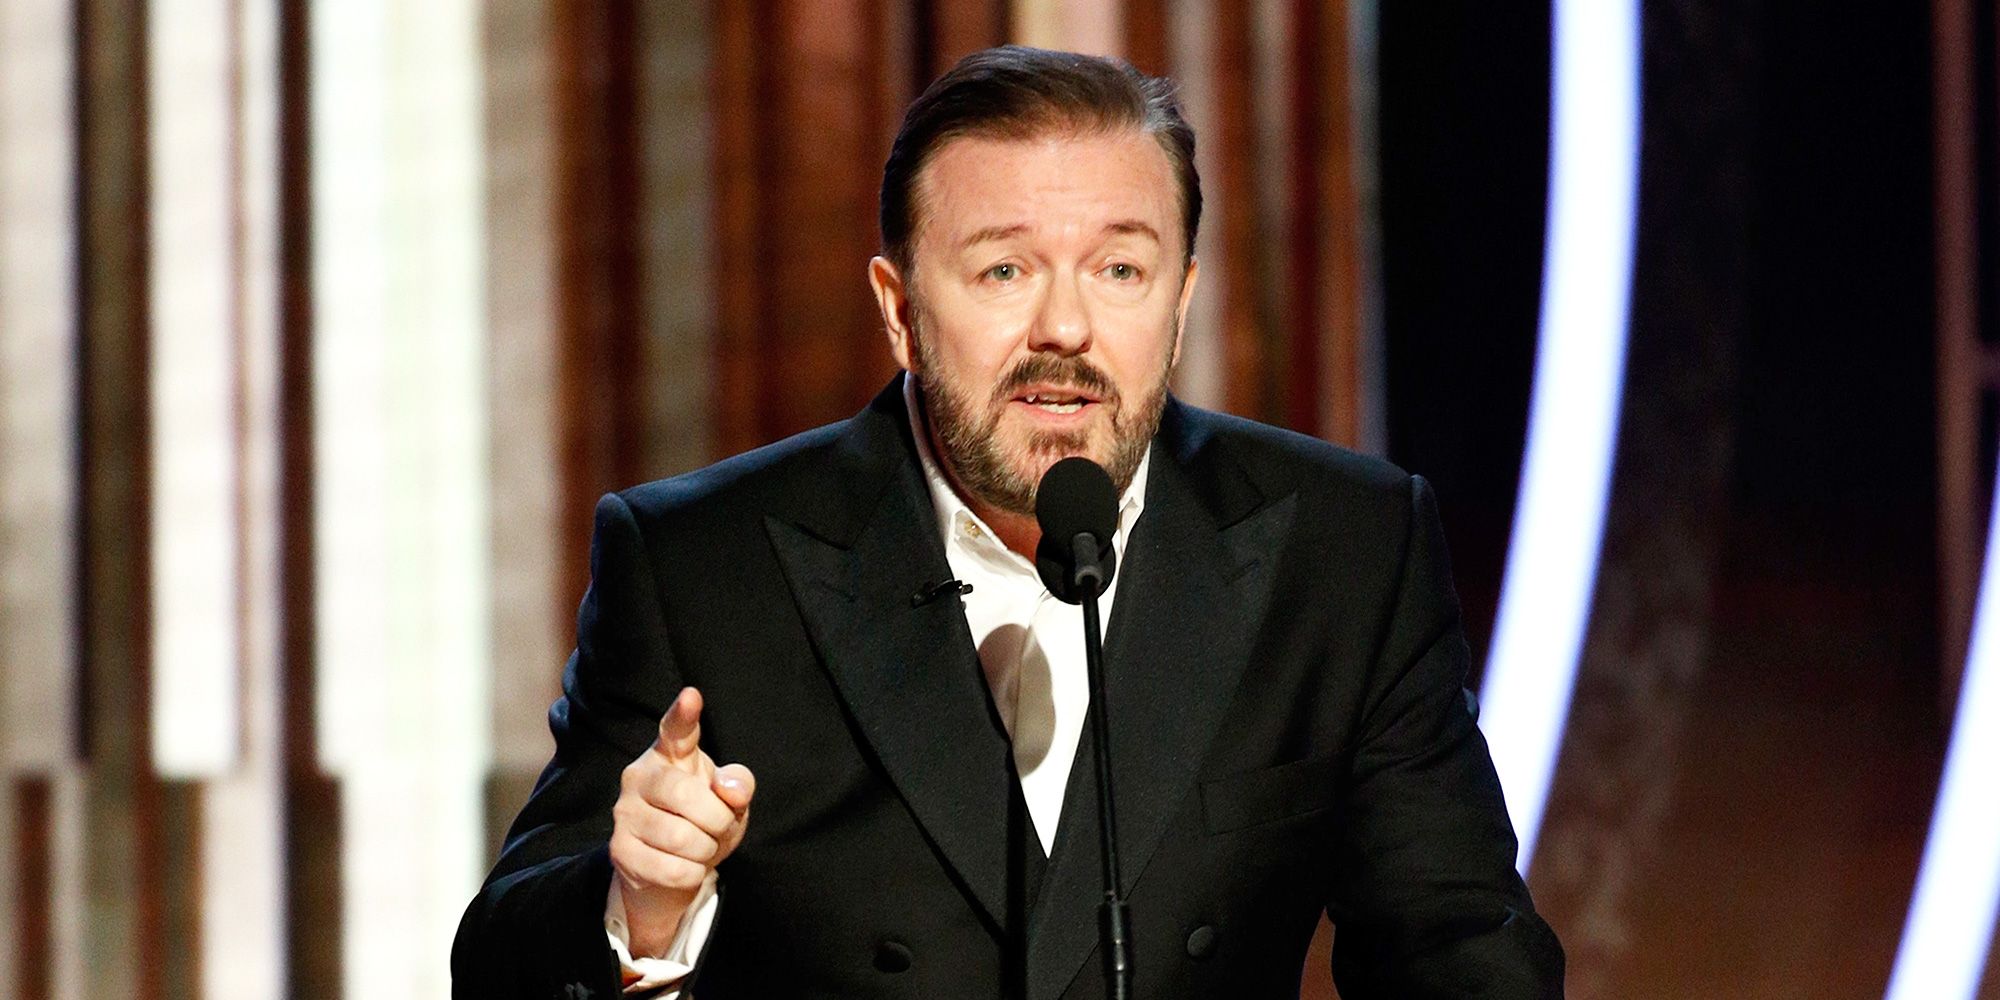 Ricky Gervais publica chistes ofensivos en respuesta a la bofetada de Will Smith